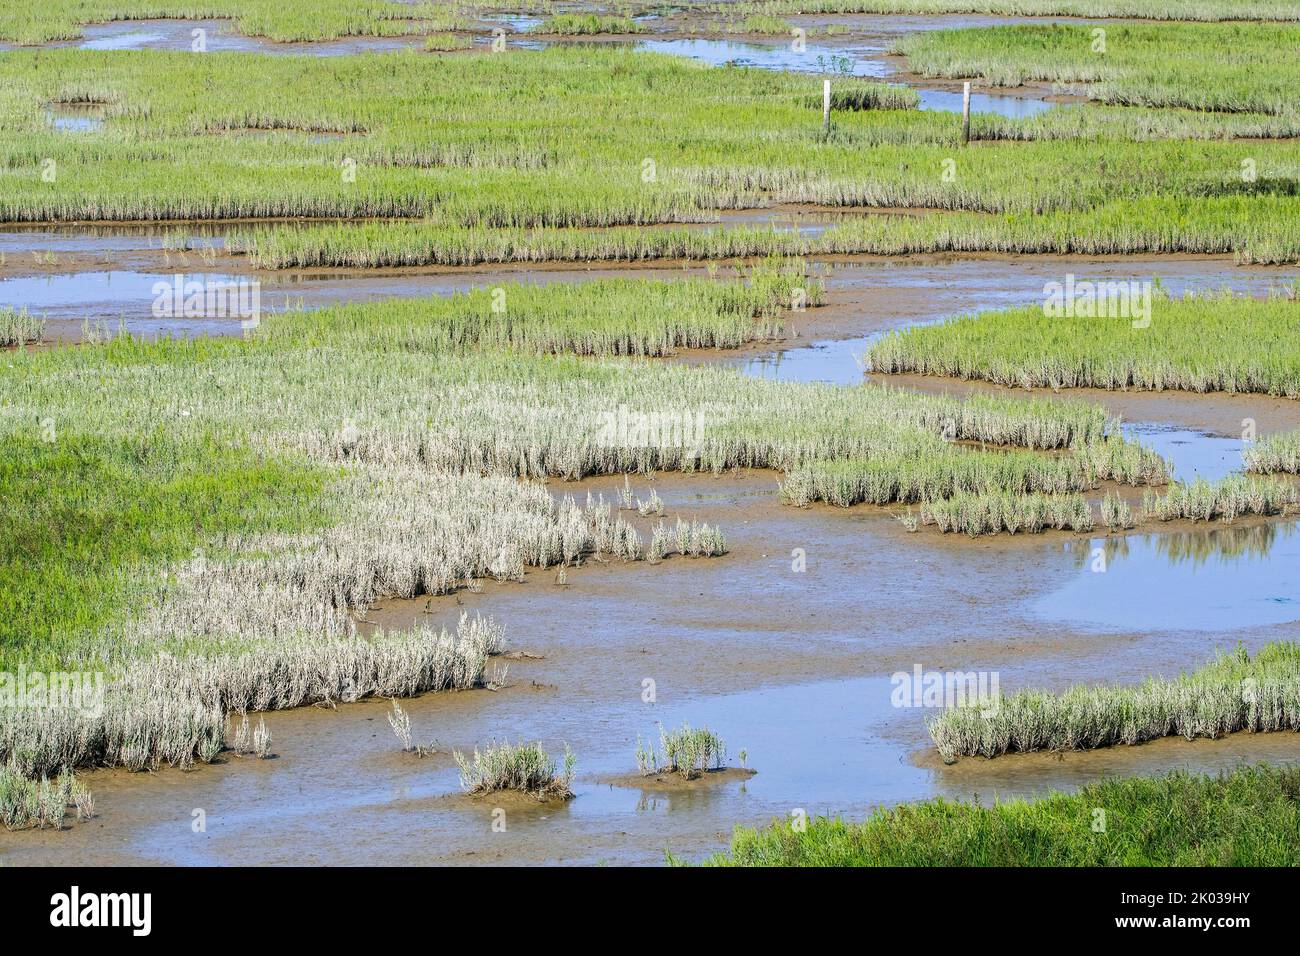 Hierba de vidrio común / zafiro pantano (Salicornia europaea) Creciendo en el pantano salado intermareal / saltamano, llanura de Zwin a finales de verano, Knokke-Heist, Bélgica Foto de stock